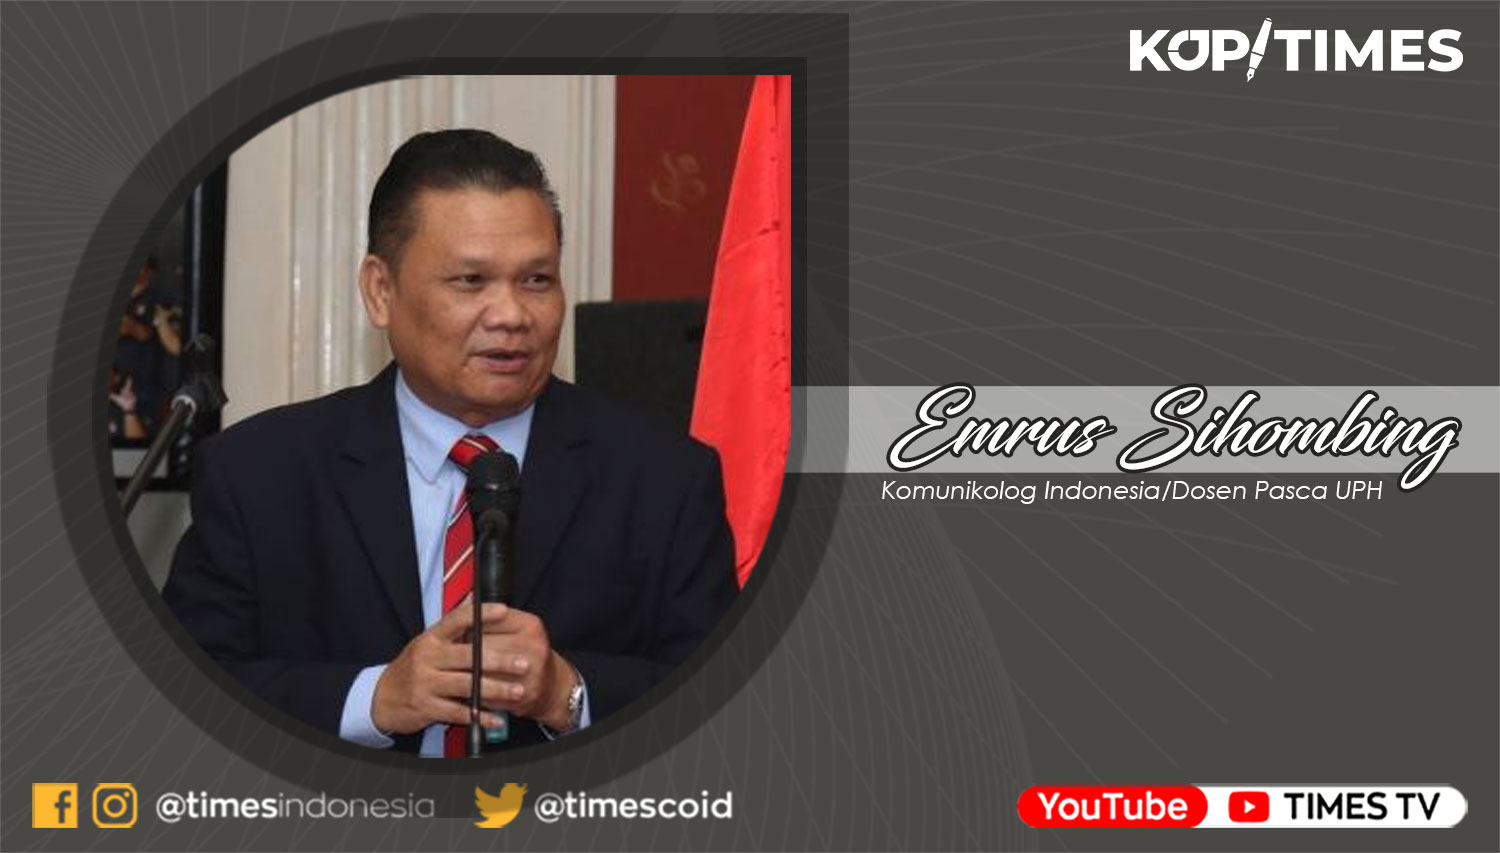 Emrus Sihombing, Komunikolog Indonesia/Dosen Pasca UPH.